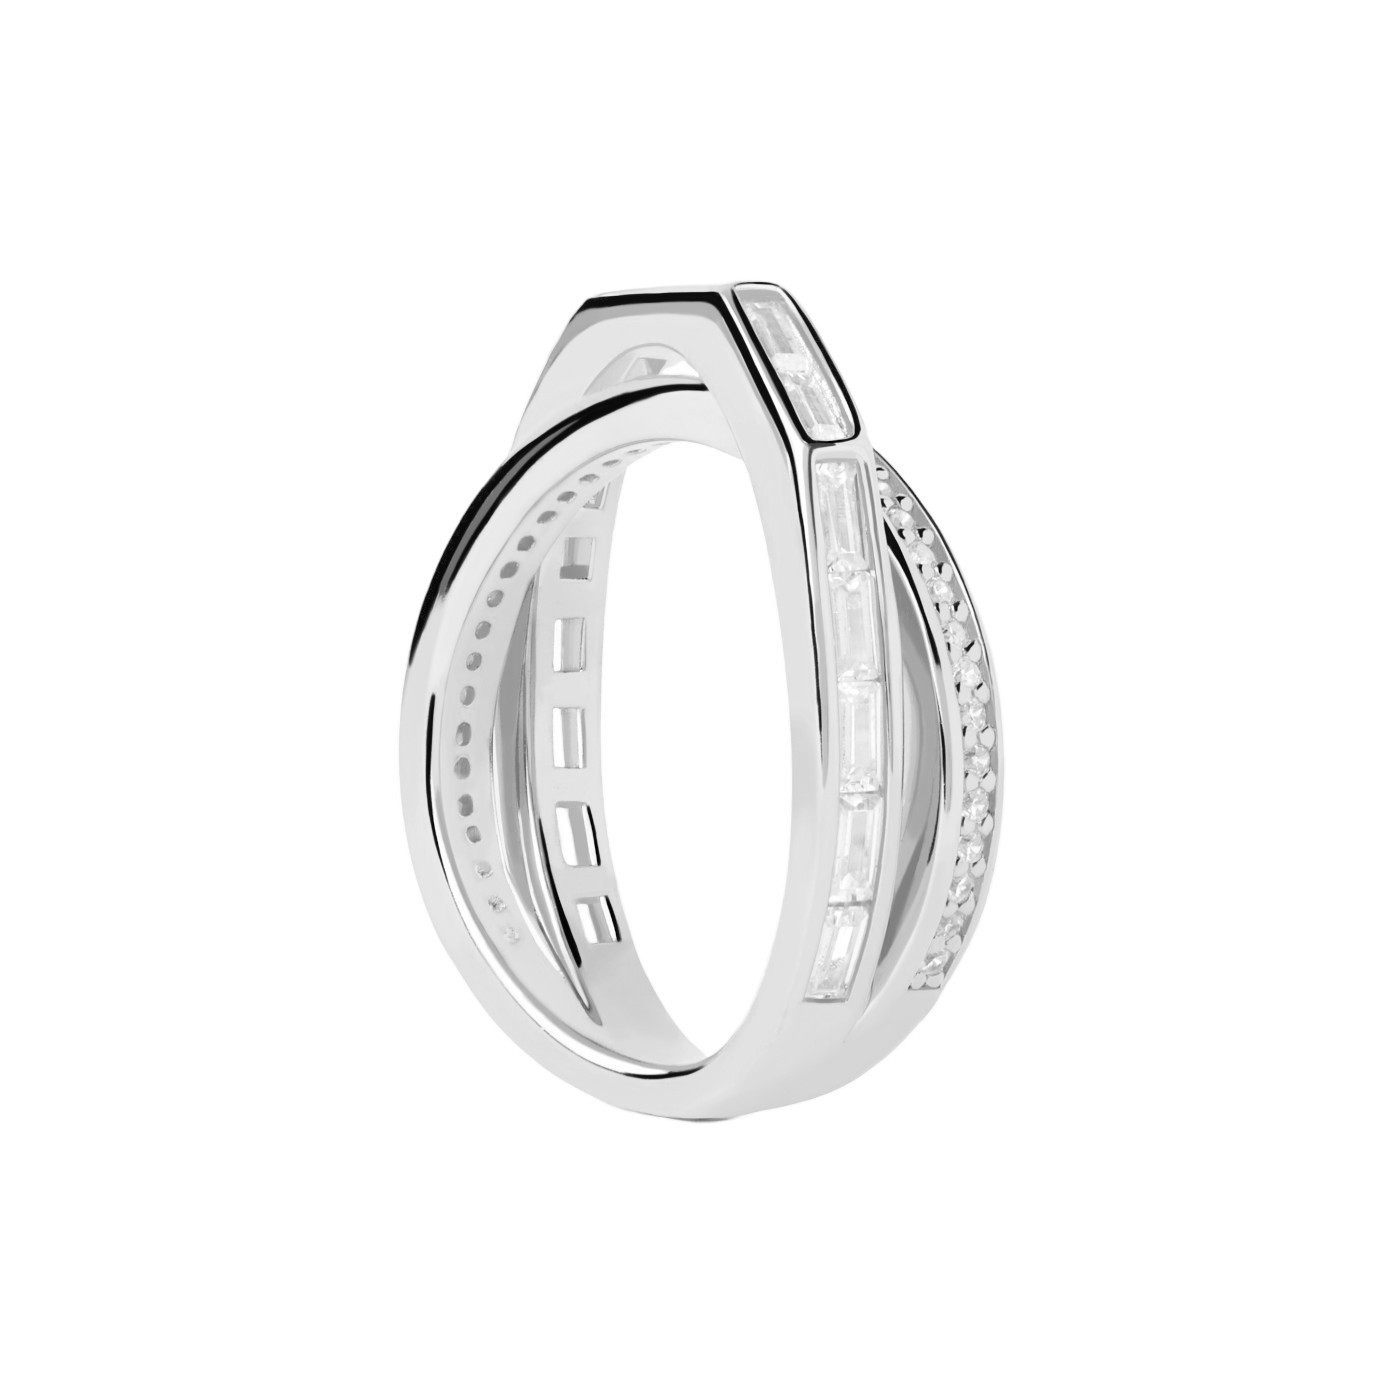 PDPAOLA Třpytivý stříbrný prsten se zirkony Olivia Essentials AN02-A10 48 mm